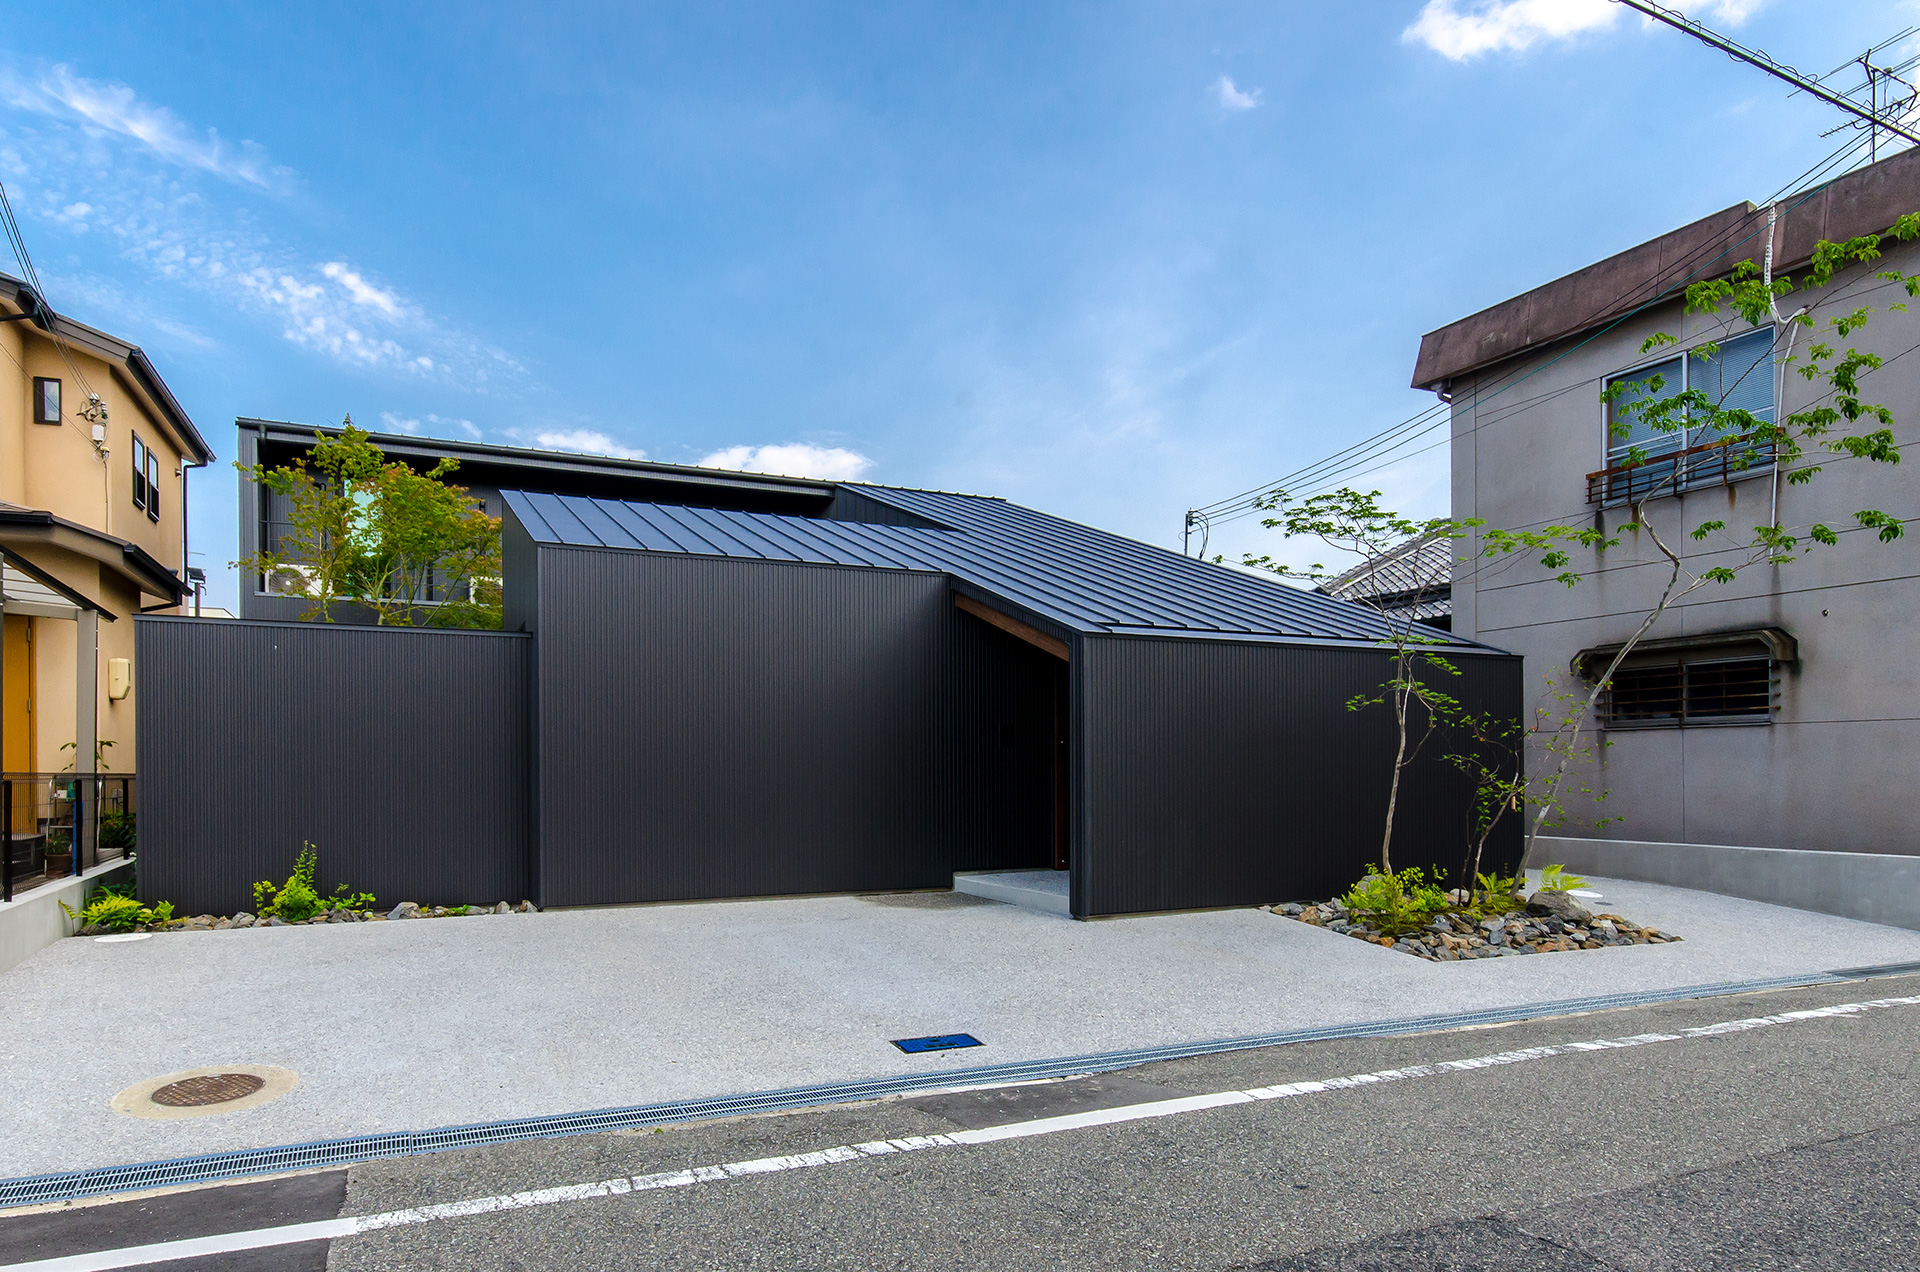 大阪府内に建つ都市型コートハウス。中庭のある住宅,ガルバリウム鋼板の外観